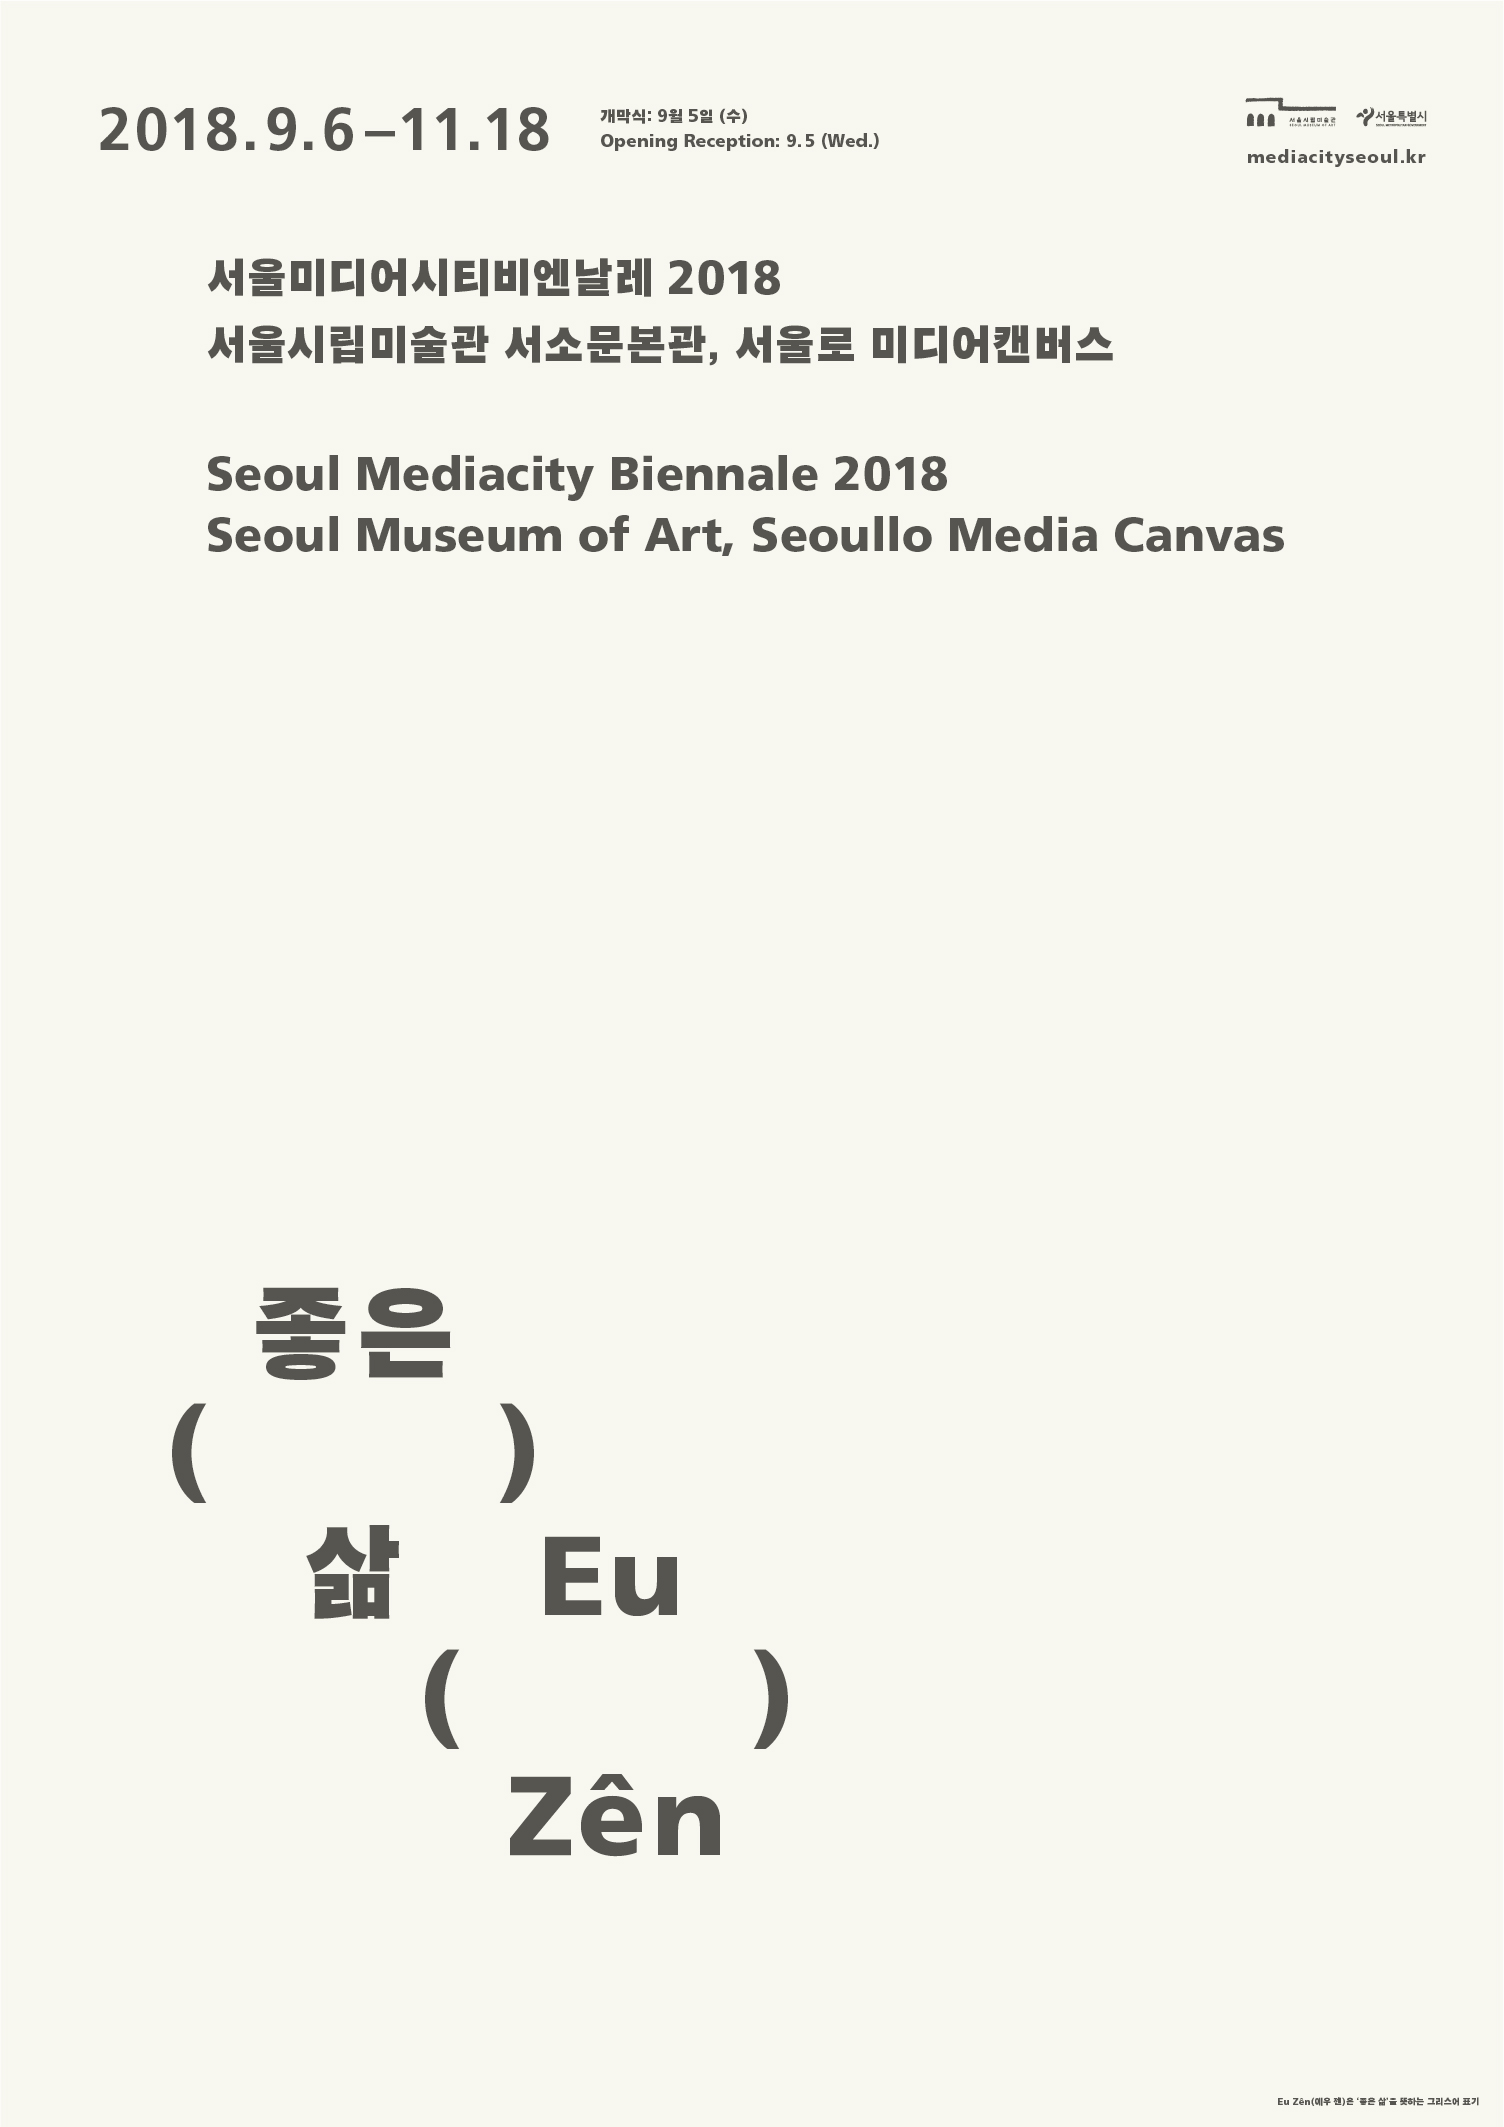 Seoul Mediacity Biennale 2018 Eu Zên